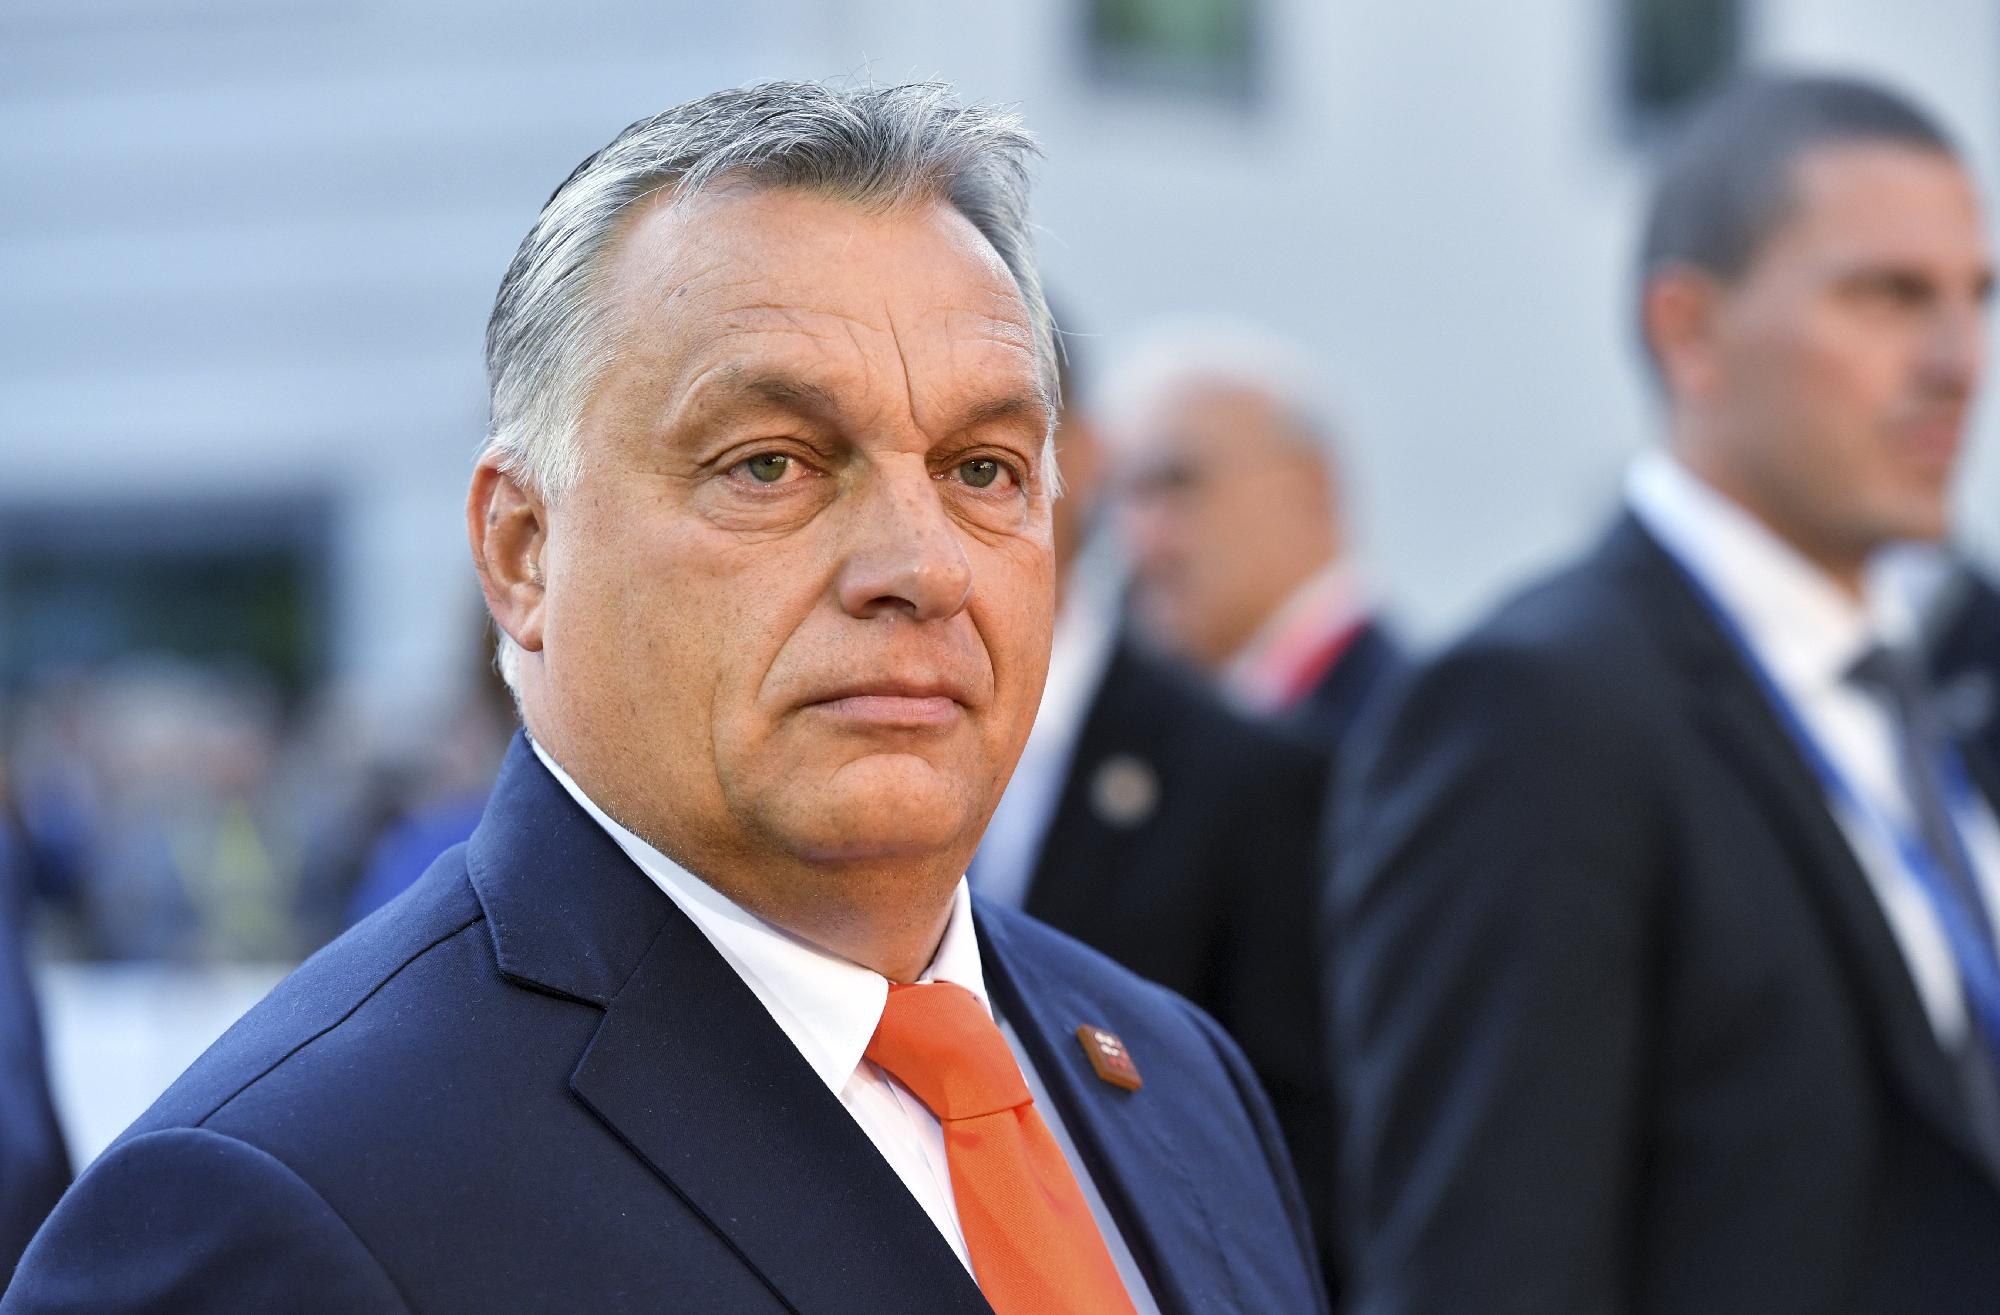 Orbán: A Frontex még egy méter határt sem védett meg, mi több száz km-t